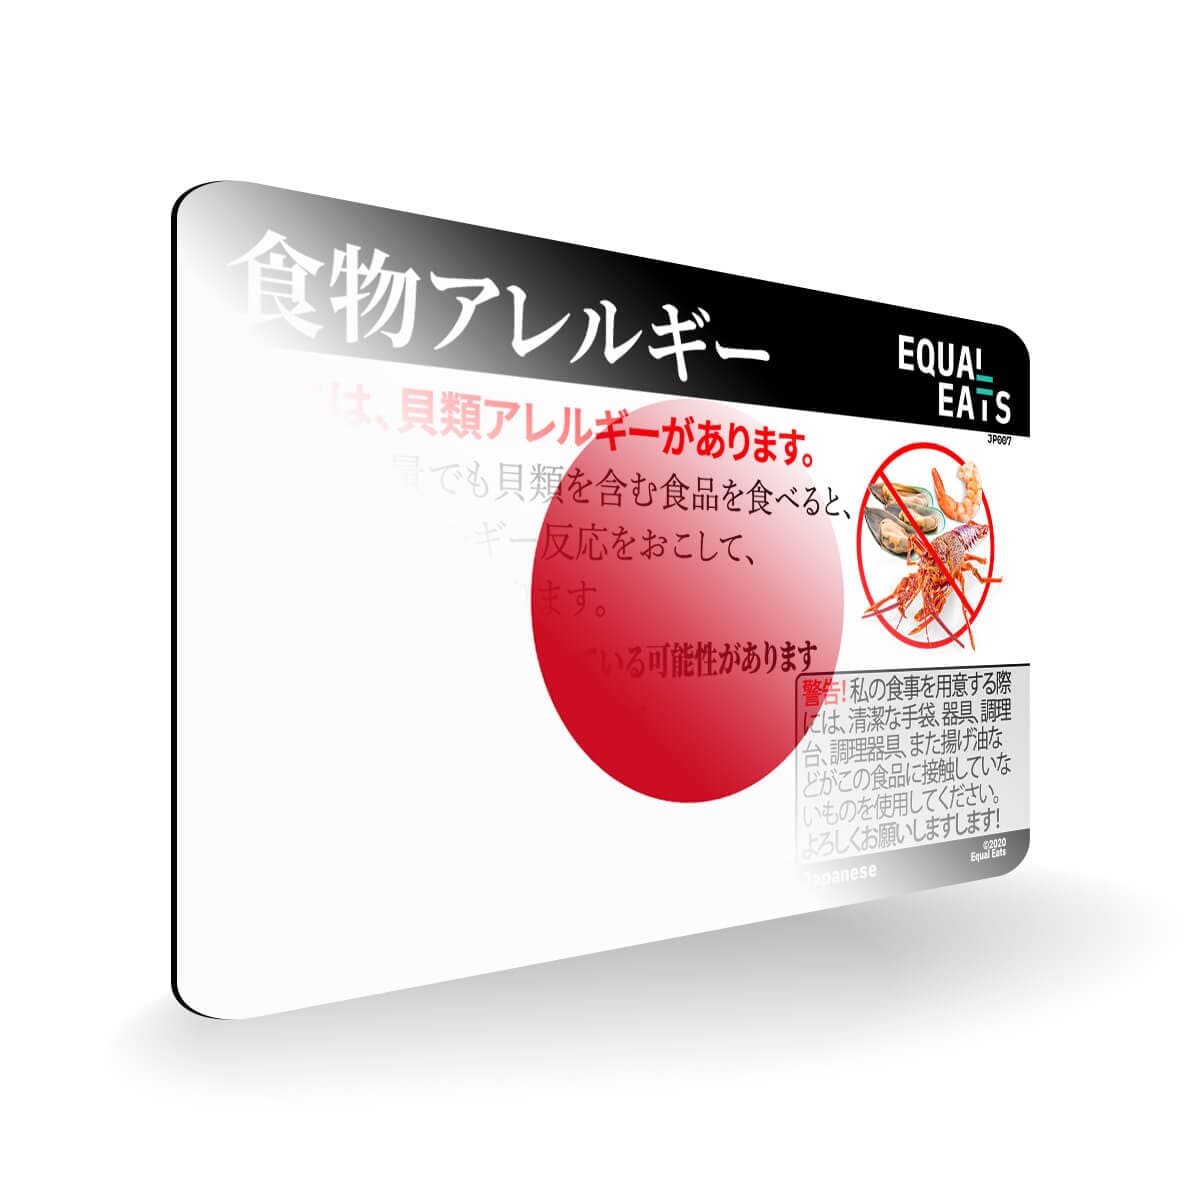 Shellfish Allergy in Japanese. Shellfish Allergy Card for Japan